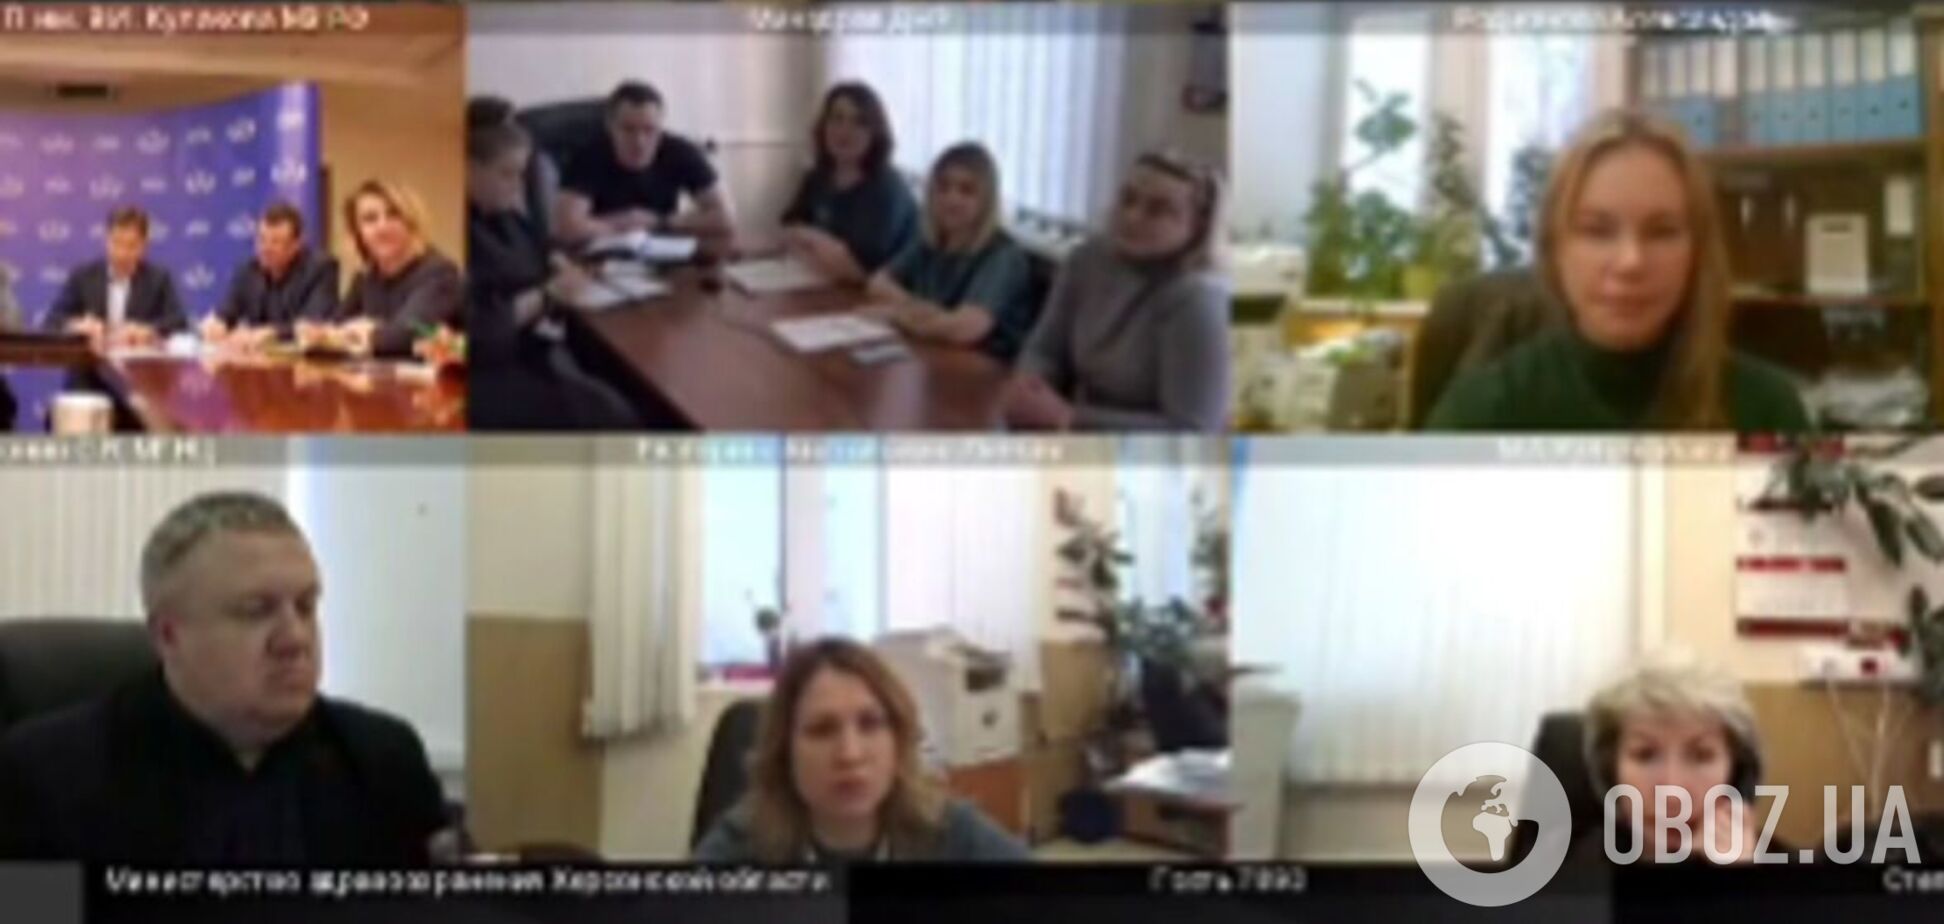 СБУ зірвала  ZOOM-нараду колаборантів  з московськими кураторами: реакція зрадників вражає. Відео 